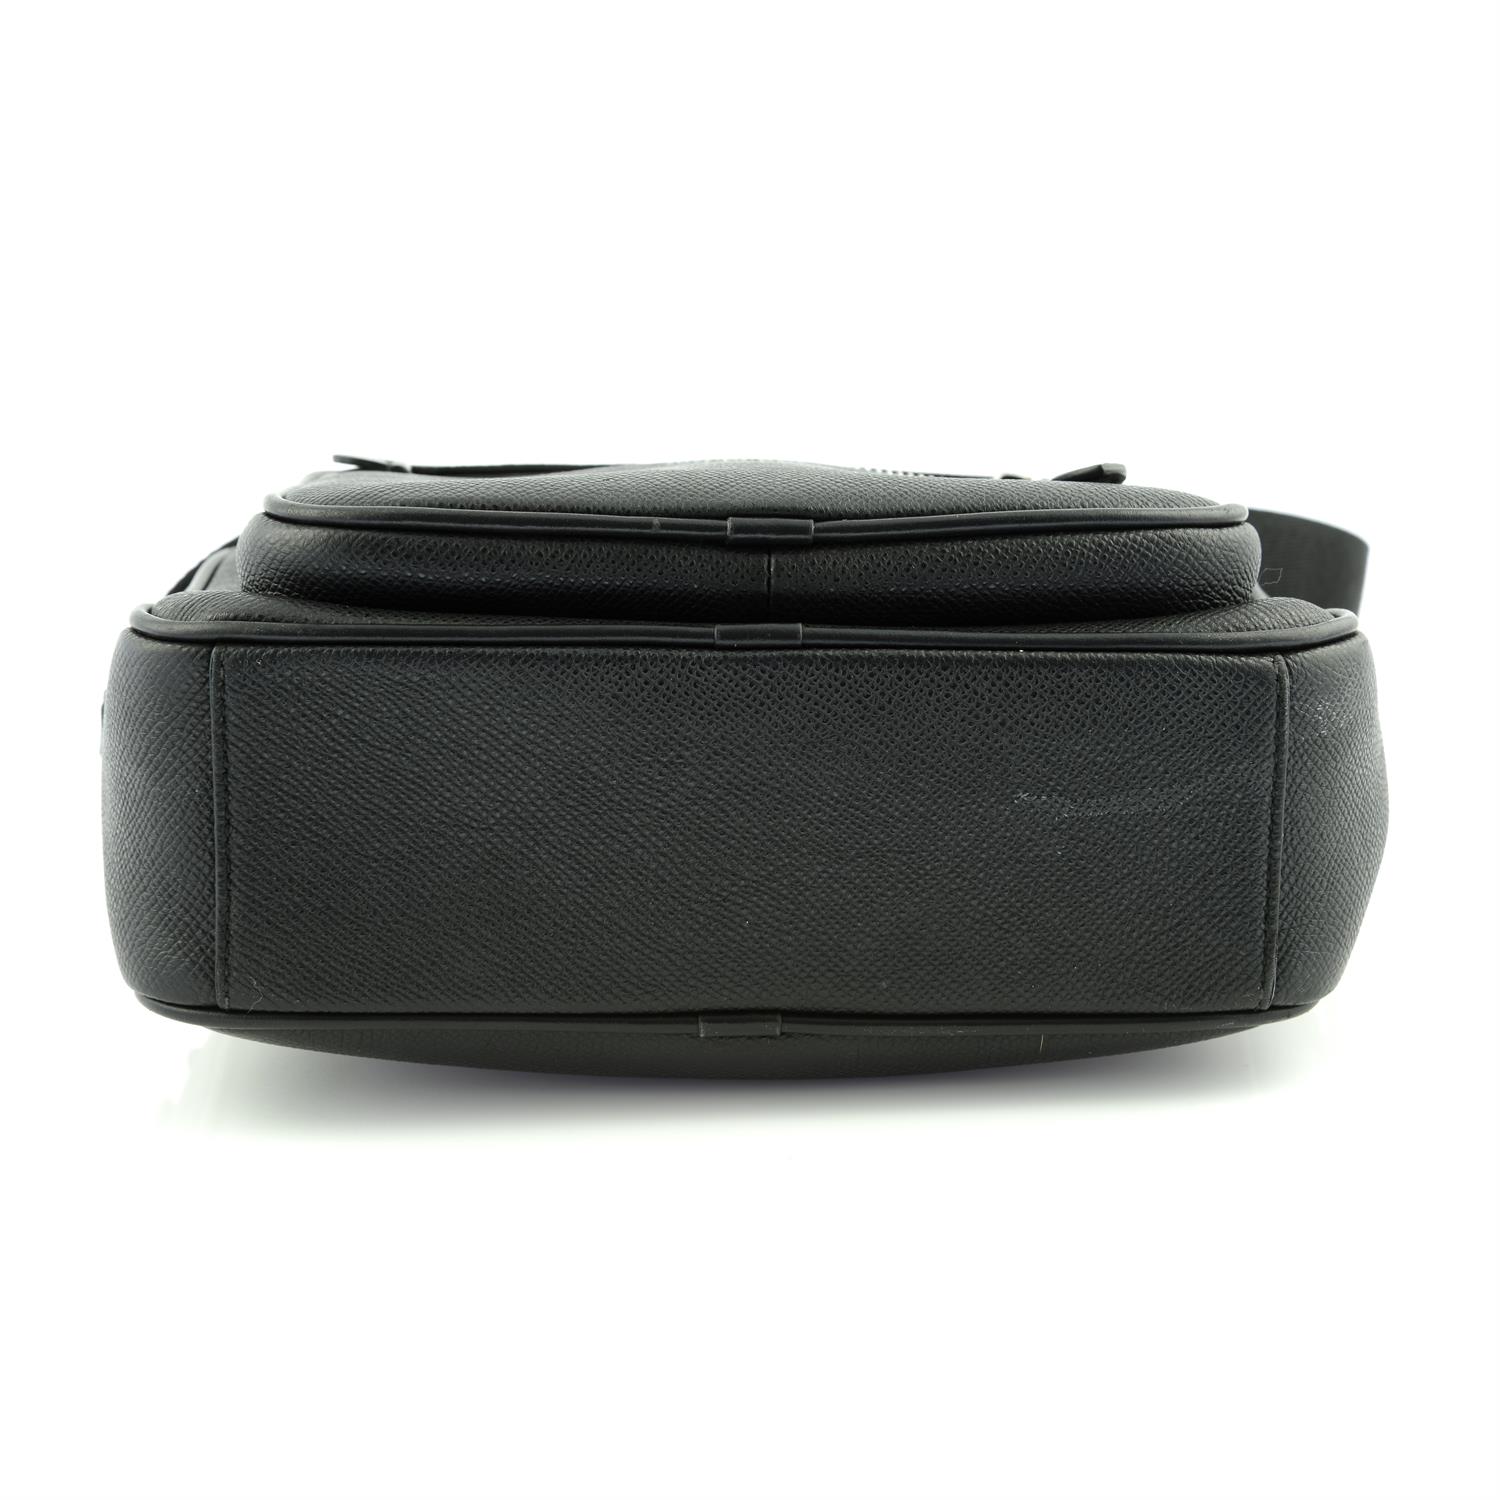 BURBERRY - a black leather camera handbag. - Image 6 of 6